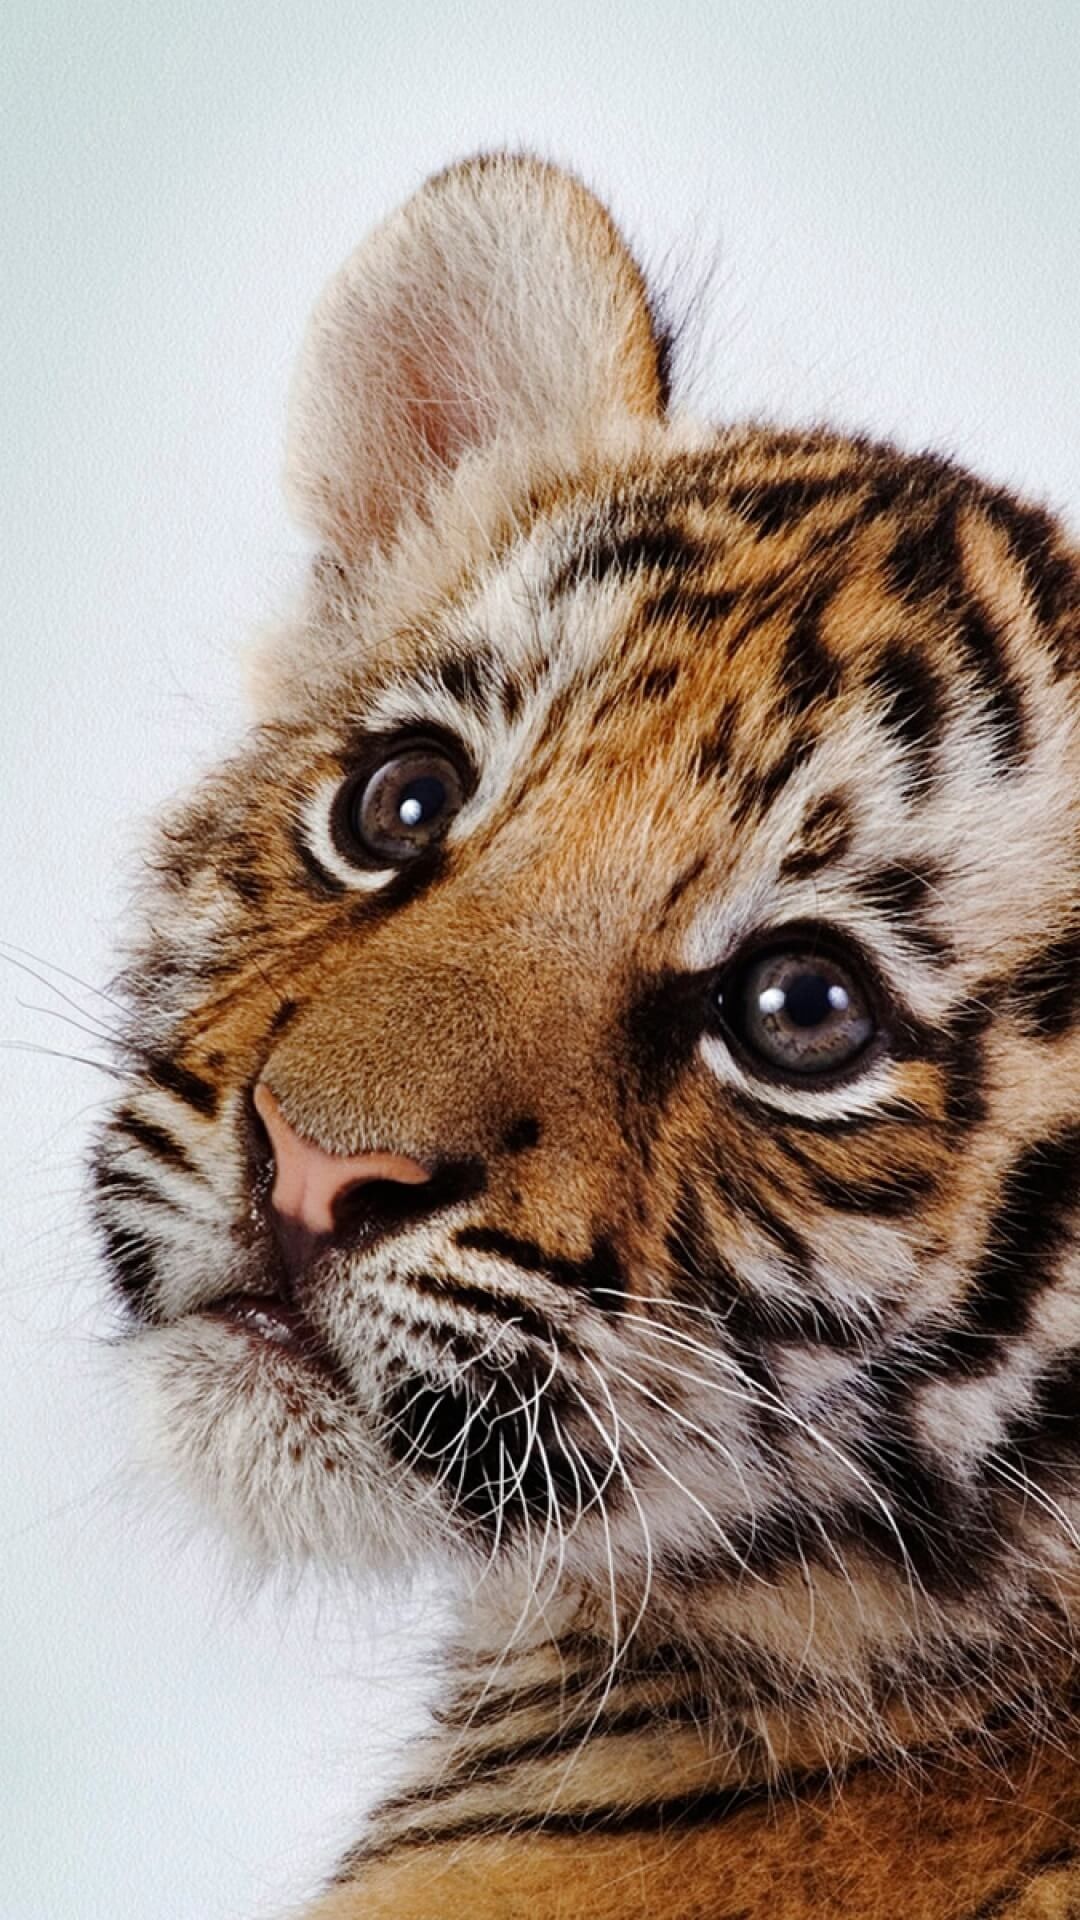 Cute Tiger Wallpaper